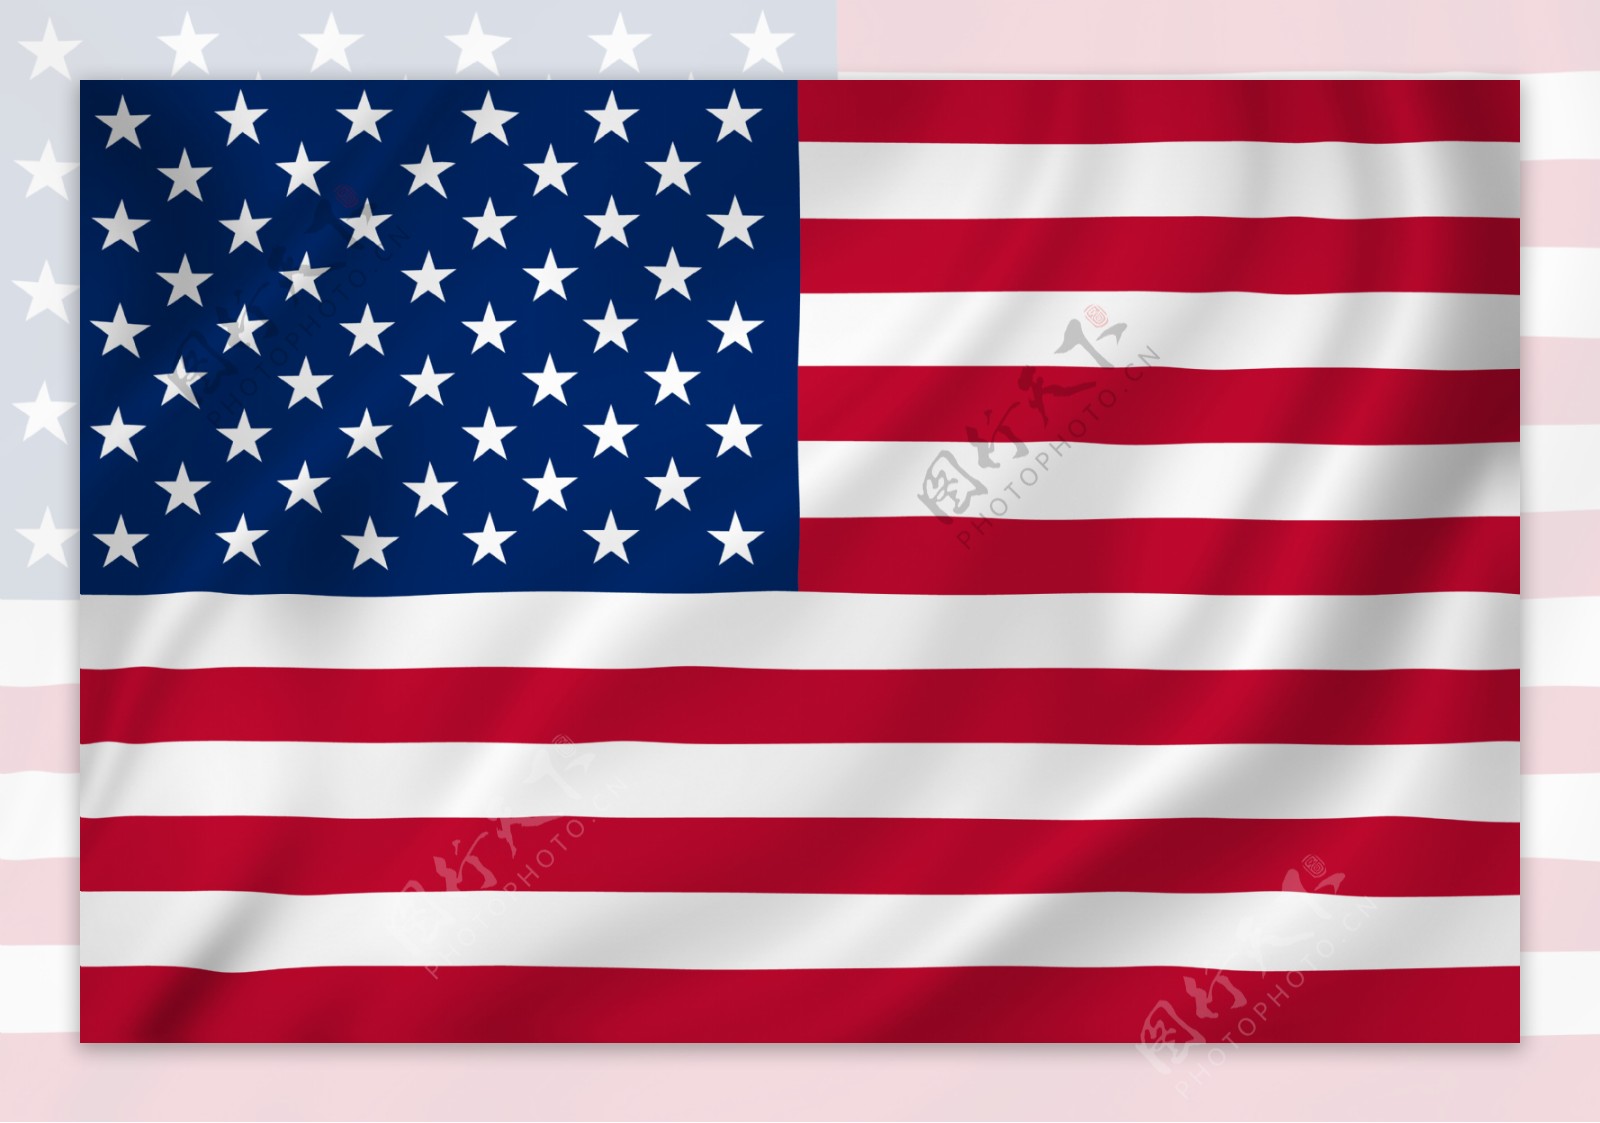 展开的美国国旗高清图片